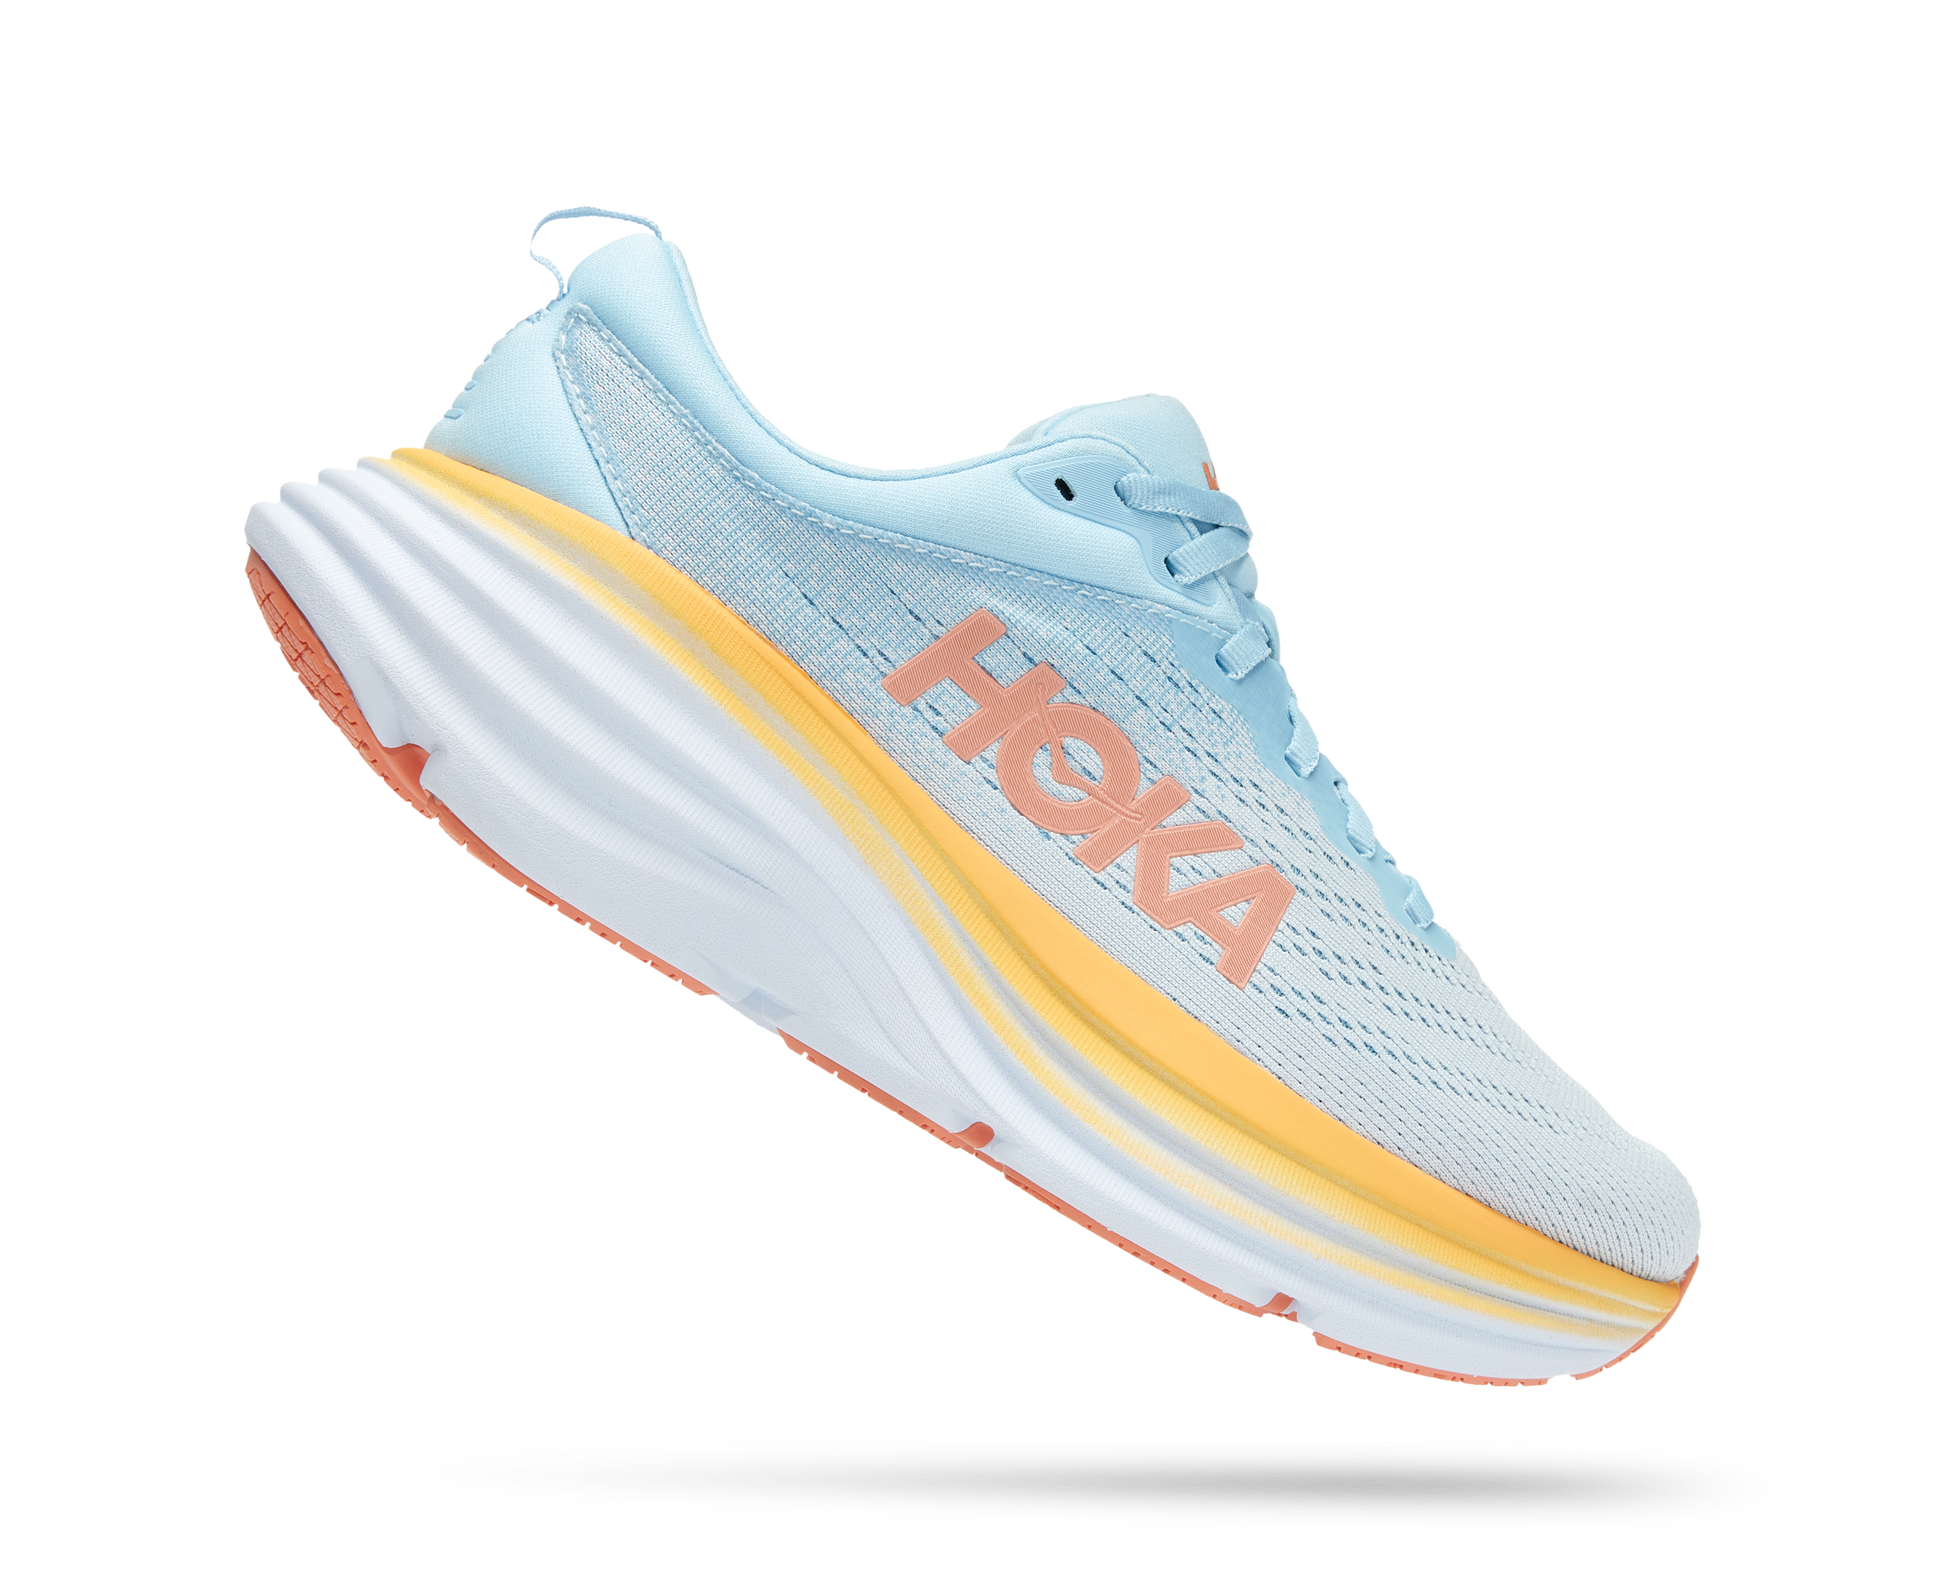 Hoka running shoe with light blue/grey fabrics and orange and white sole.